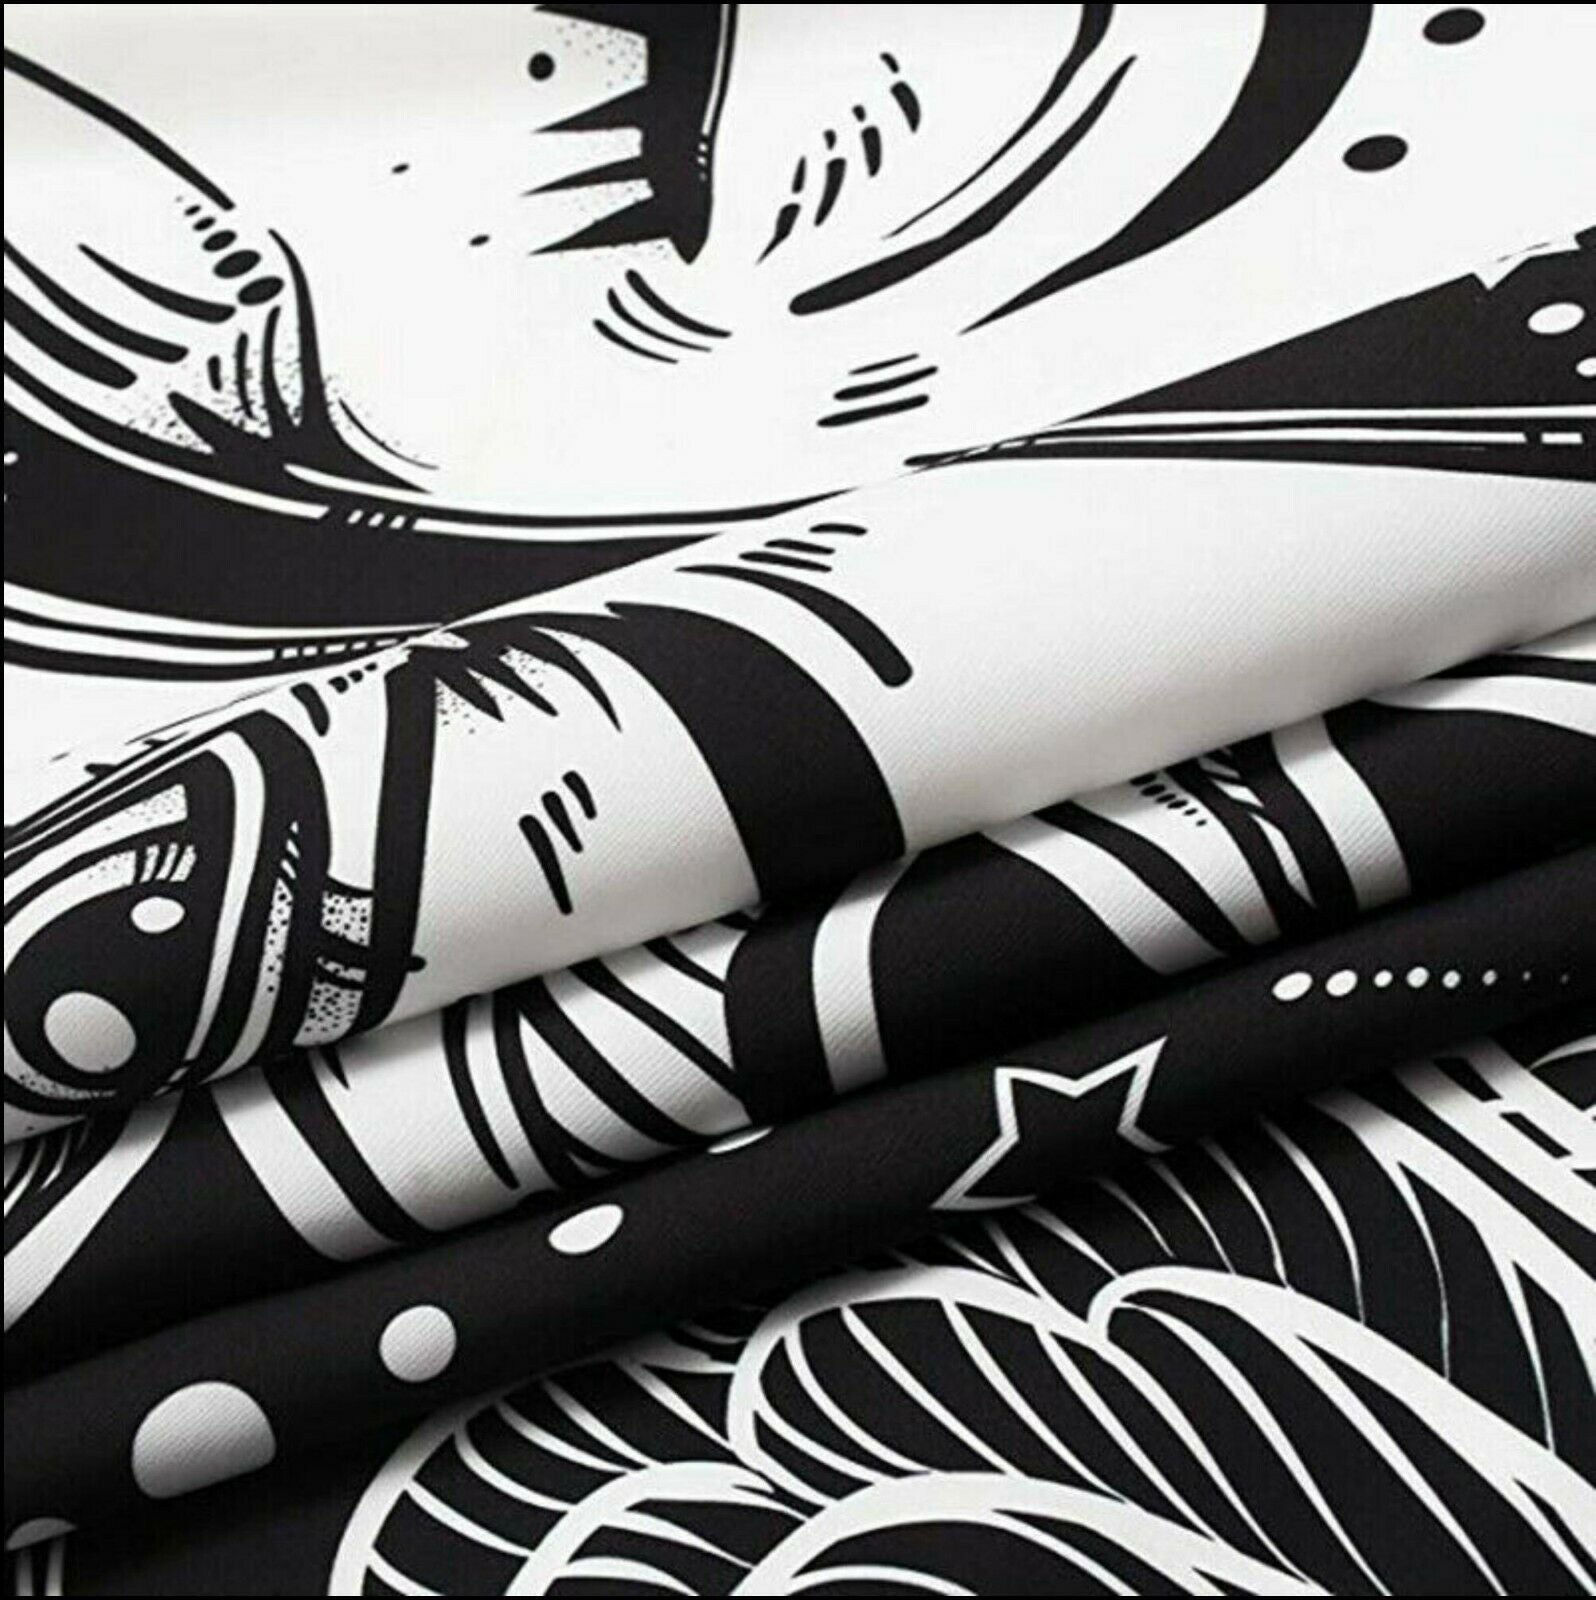 3D Waves Sunset 116125 Assaf Frank Tapestry Hanging Cloth Hang